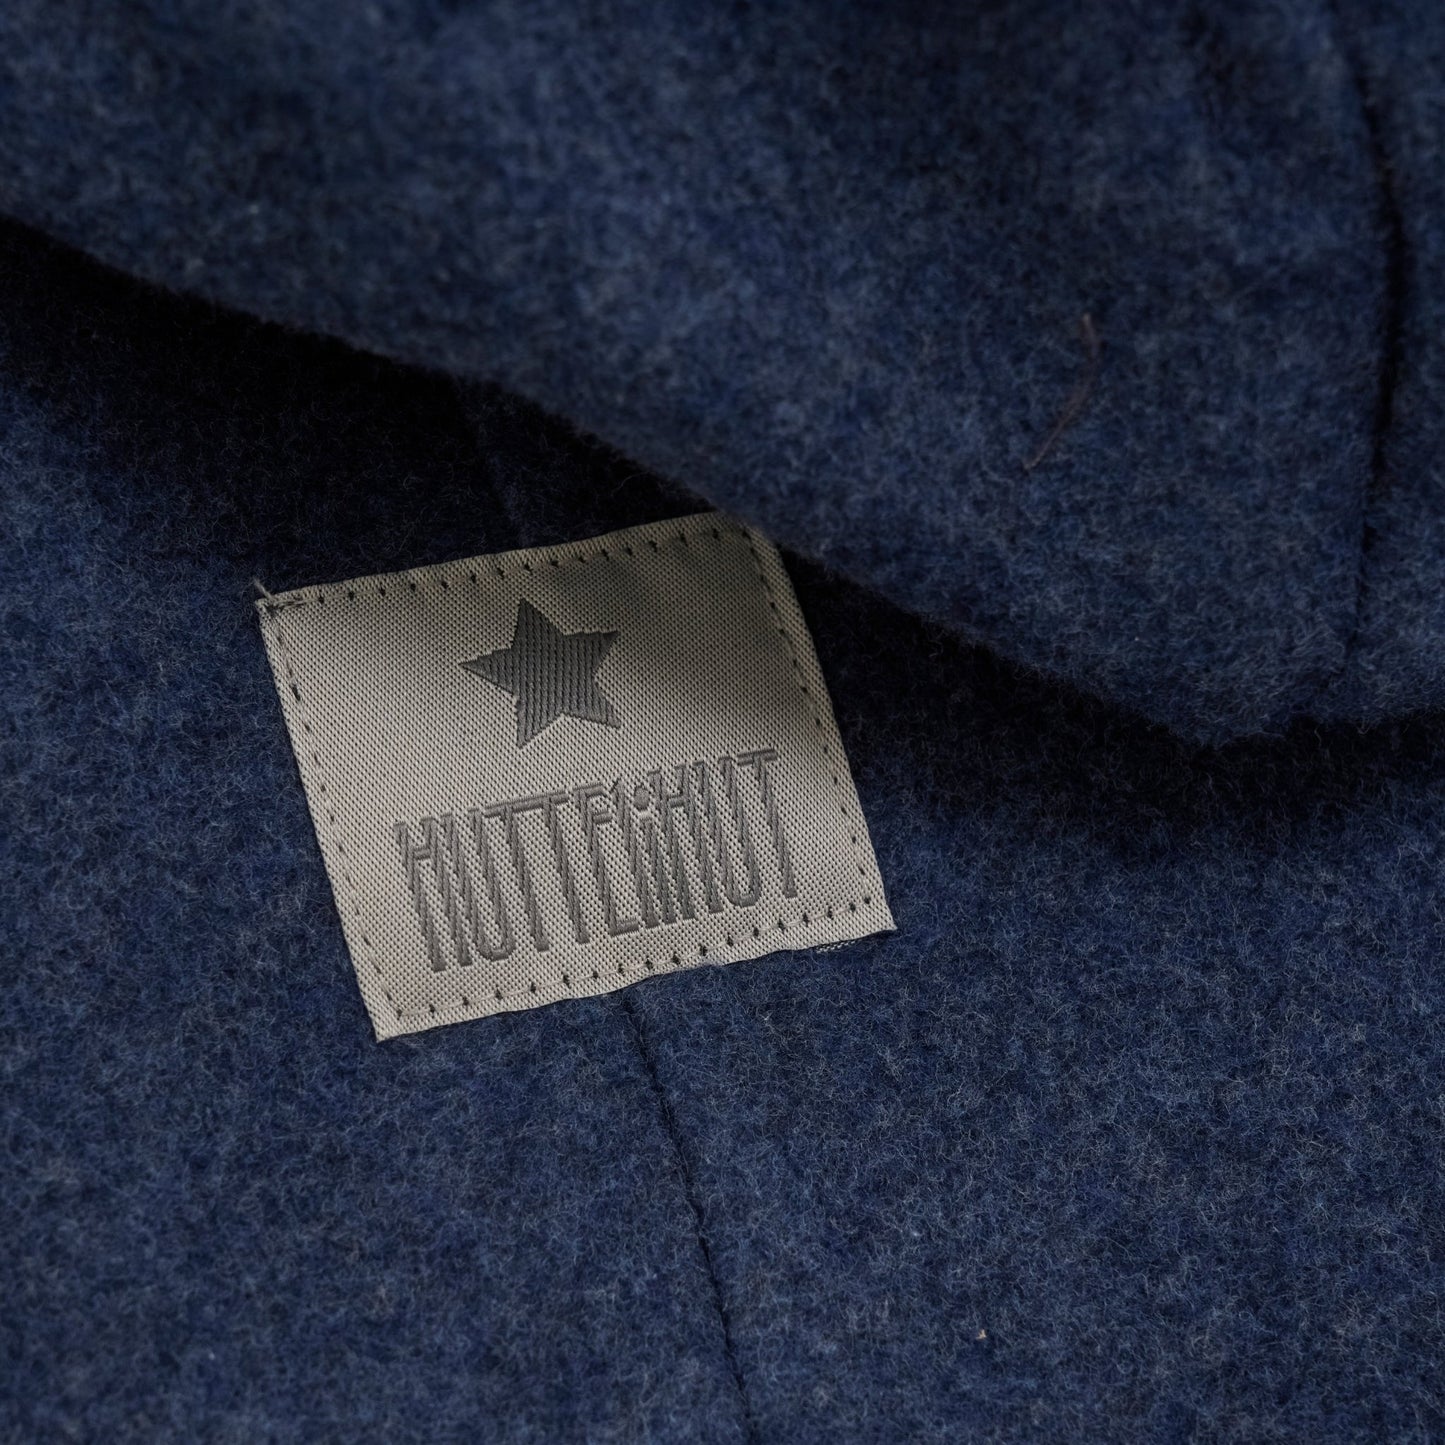 HUTTEliHUT - Pram Suit Ears Cot. Fleece (S) Color: 7790 Navy Melange